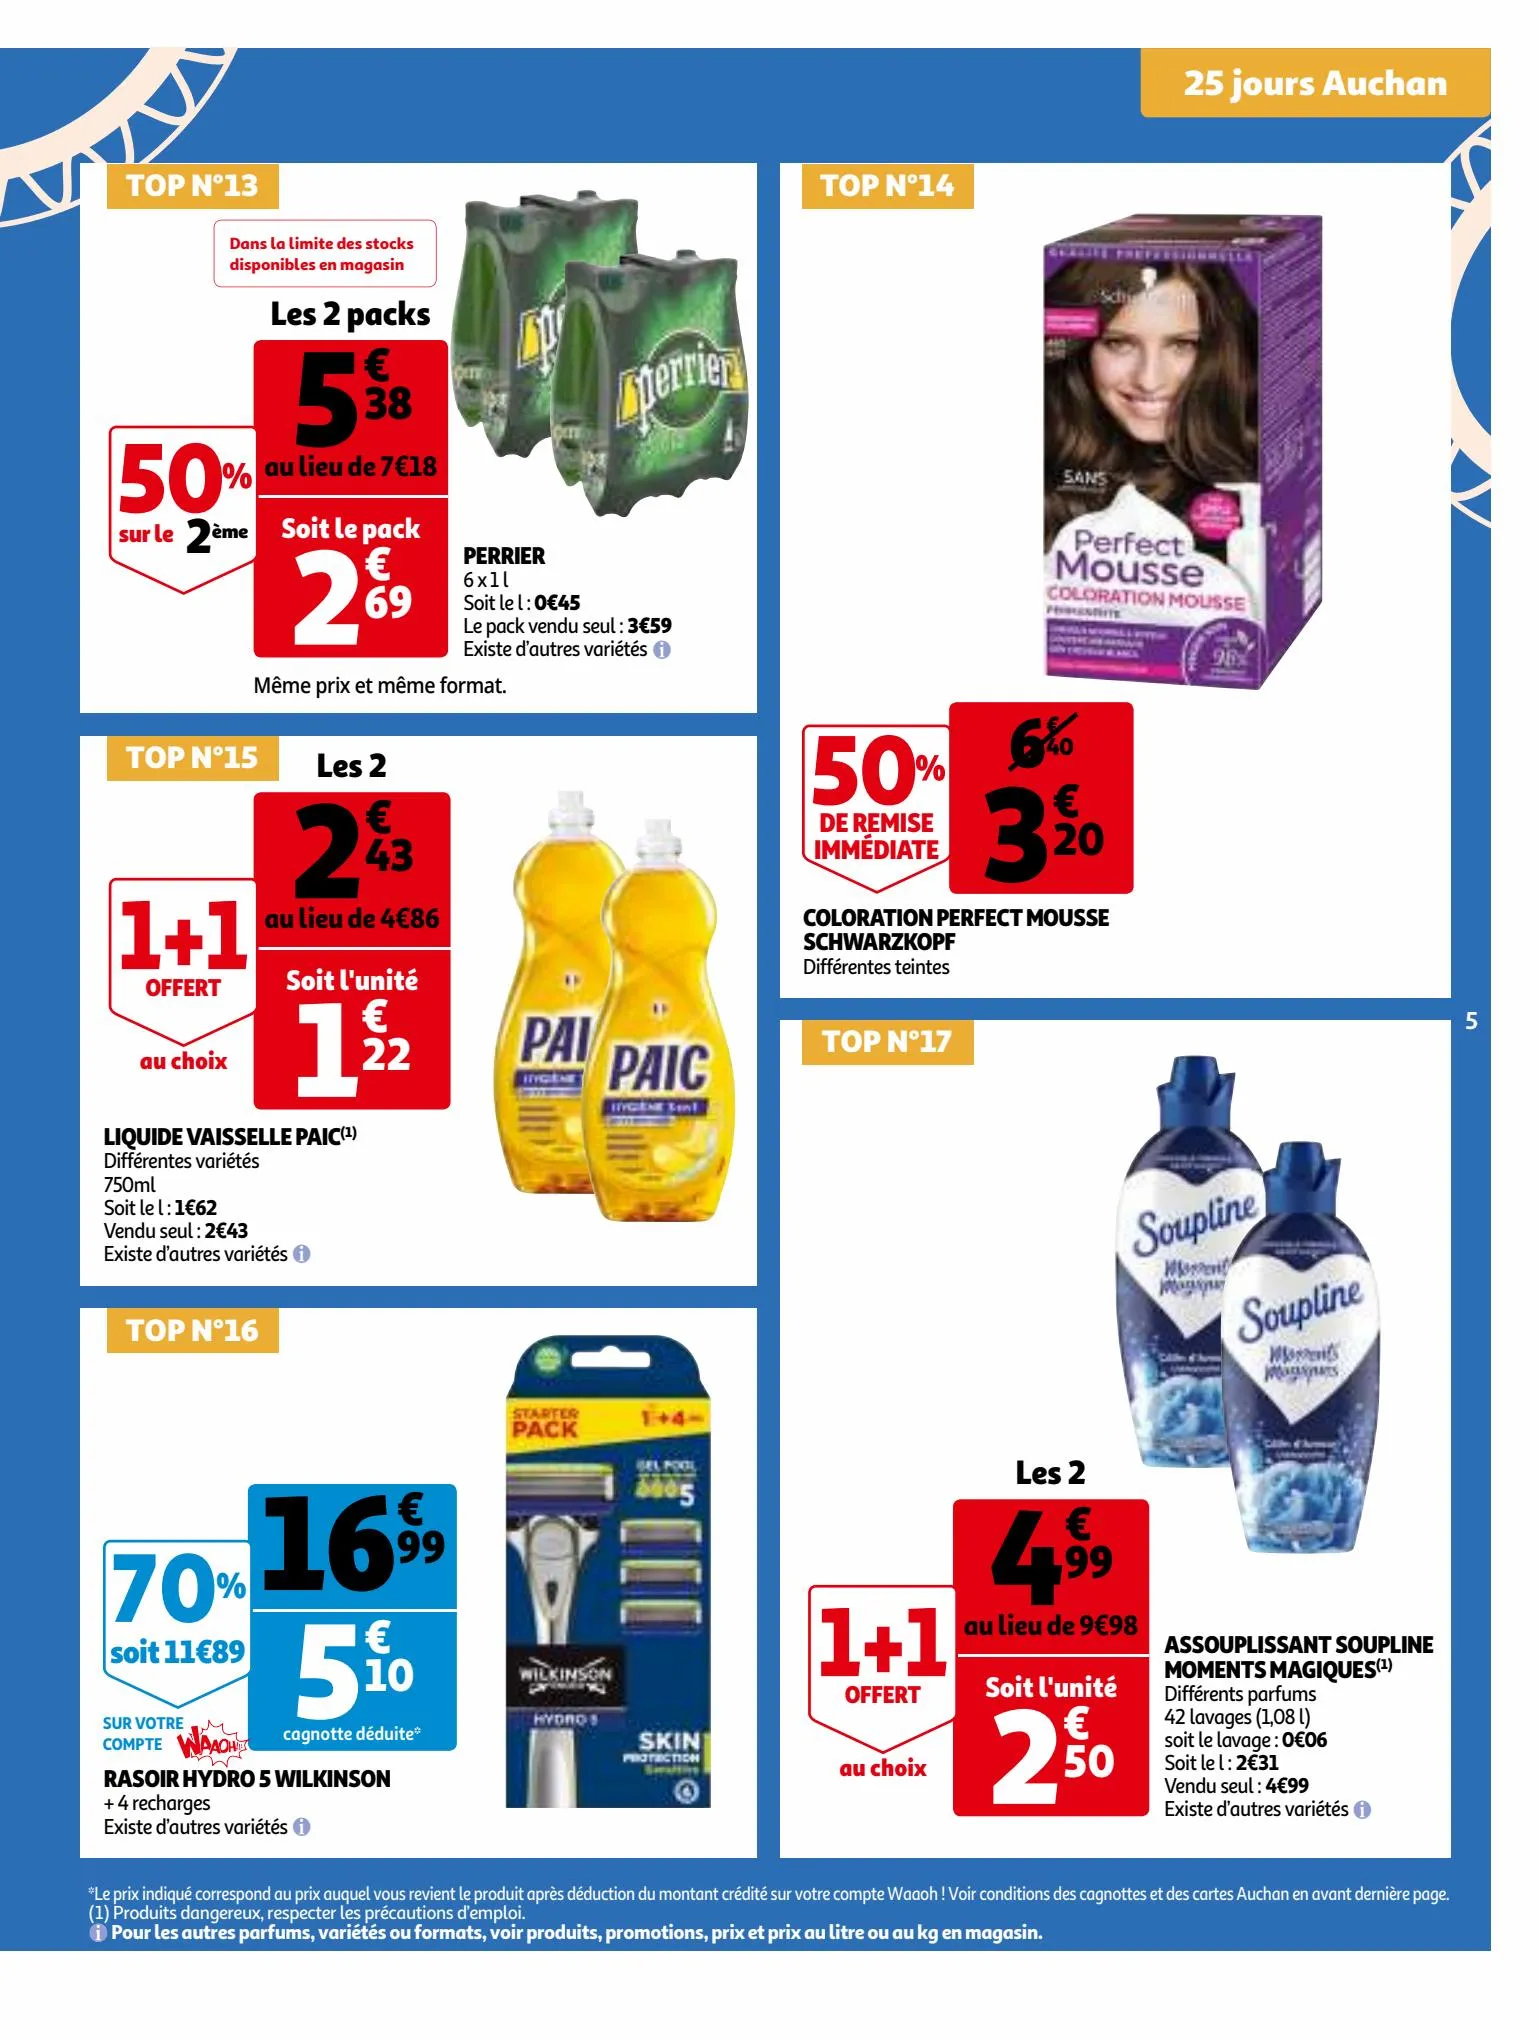 Catalogue 25 Jours Auchan, page 00005